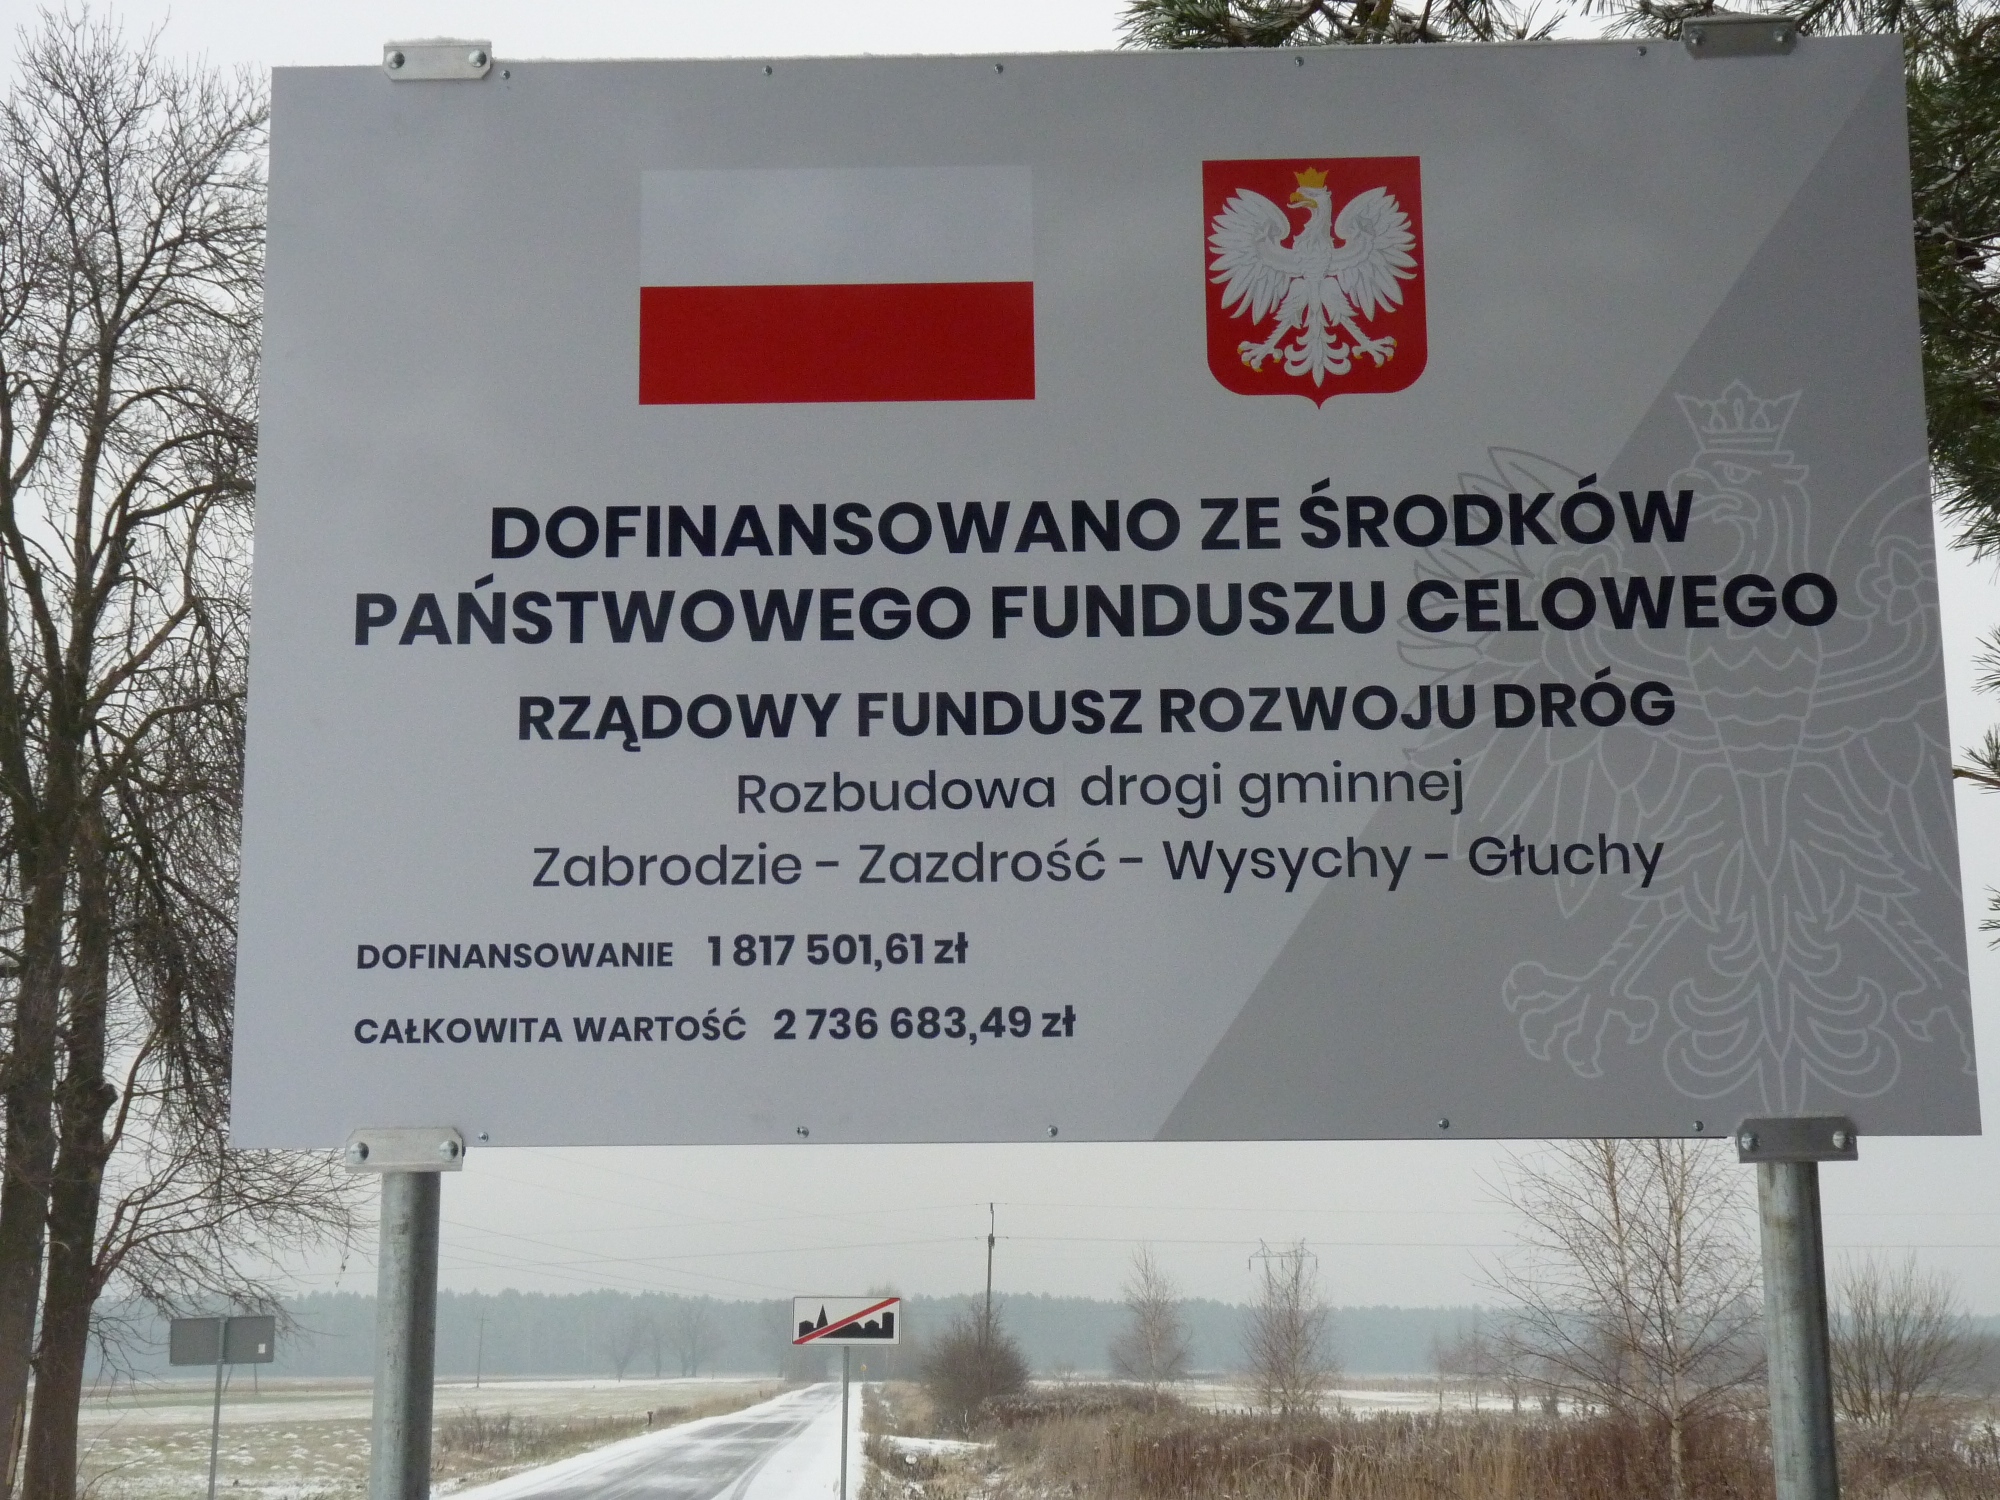 Tablica z flagą i godłem Polski z informacją o dofinansowaniu ze środków Państwowego Funduszu Celowego